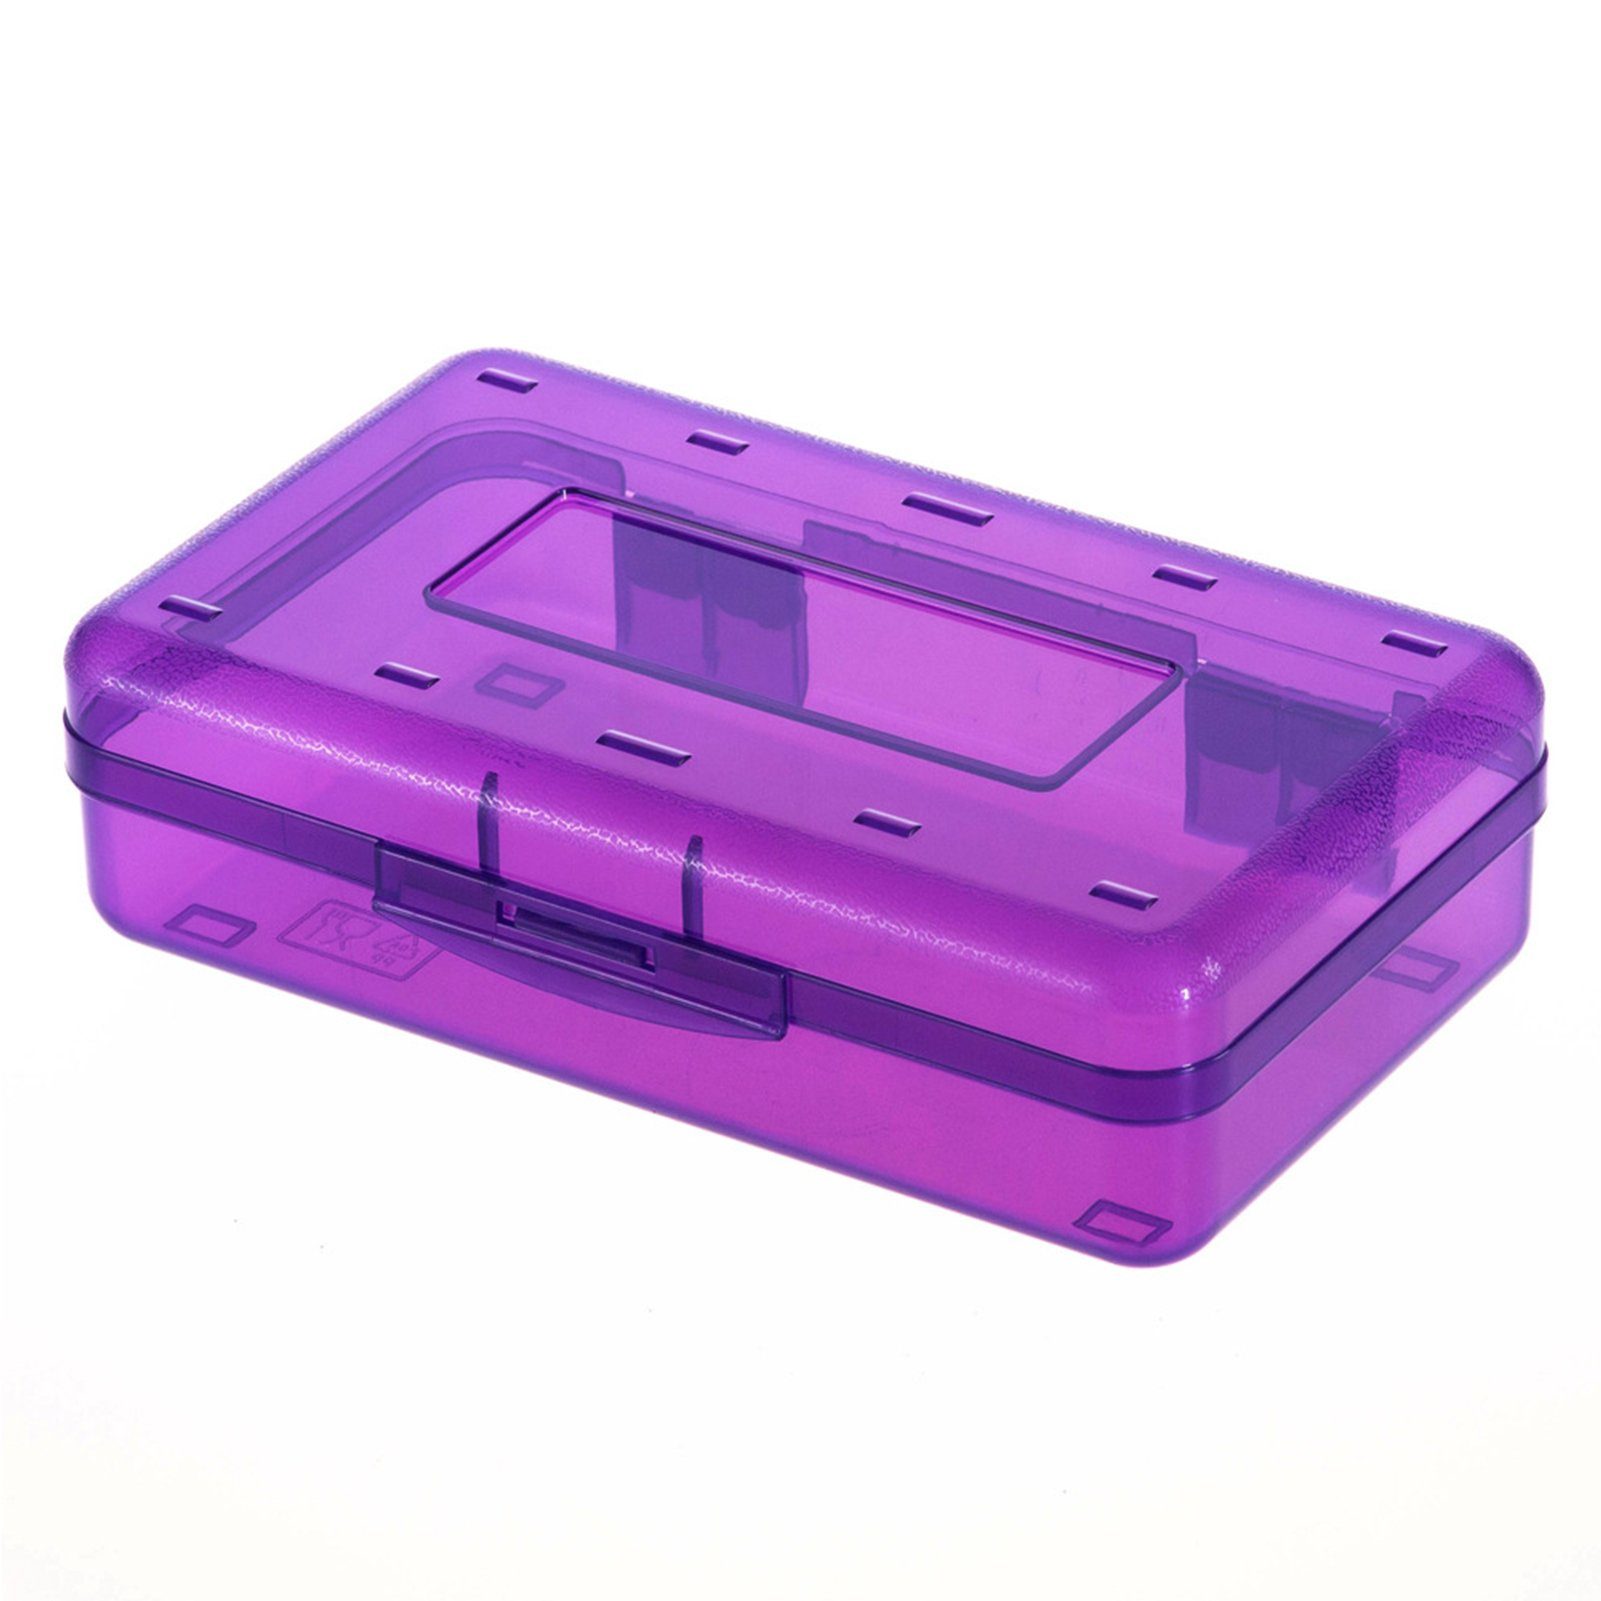 Federtasche Bleistifttasche Transparente/bunte Tragbare Federtasche, Bleistiftbox, transparent Blusmart Schöne purple